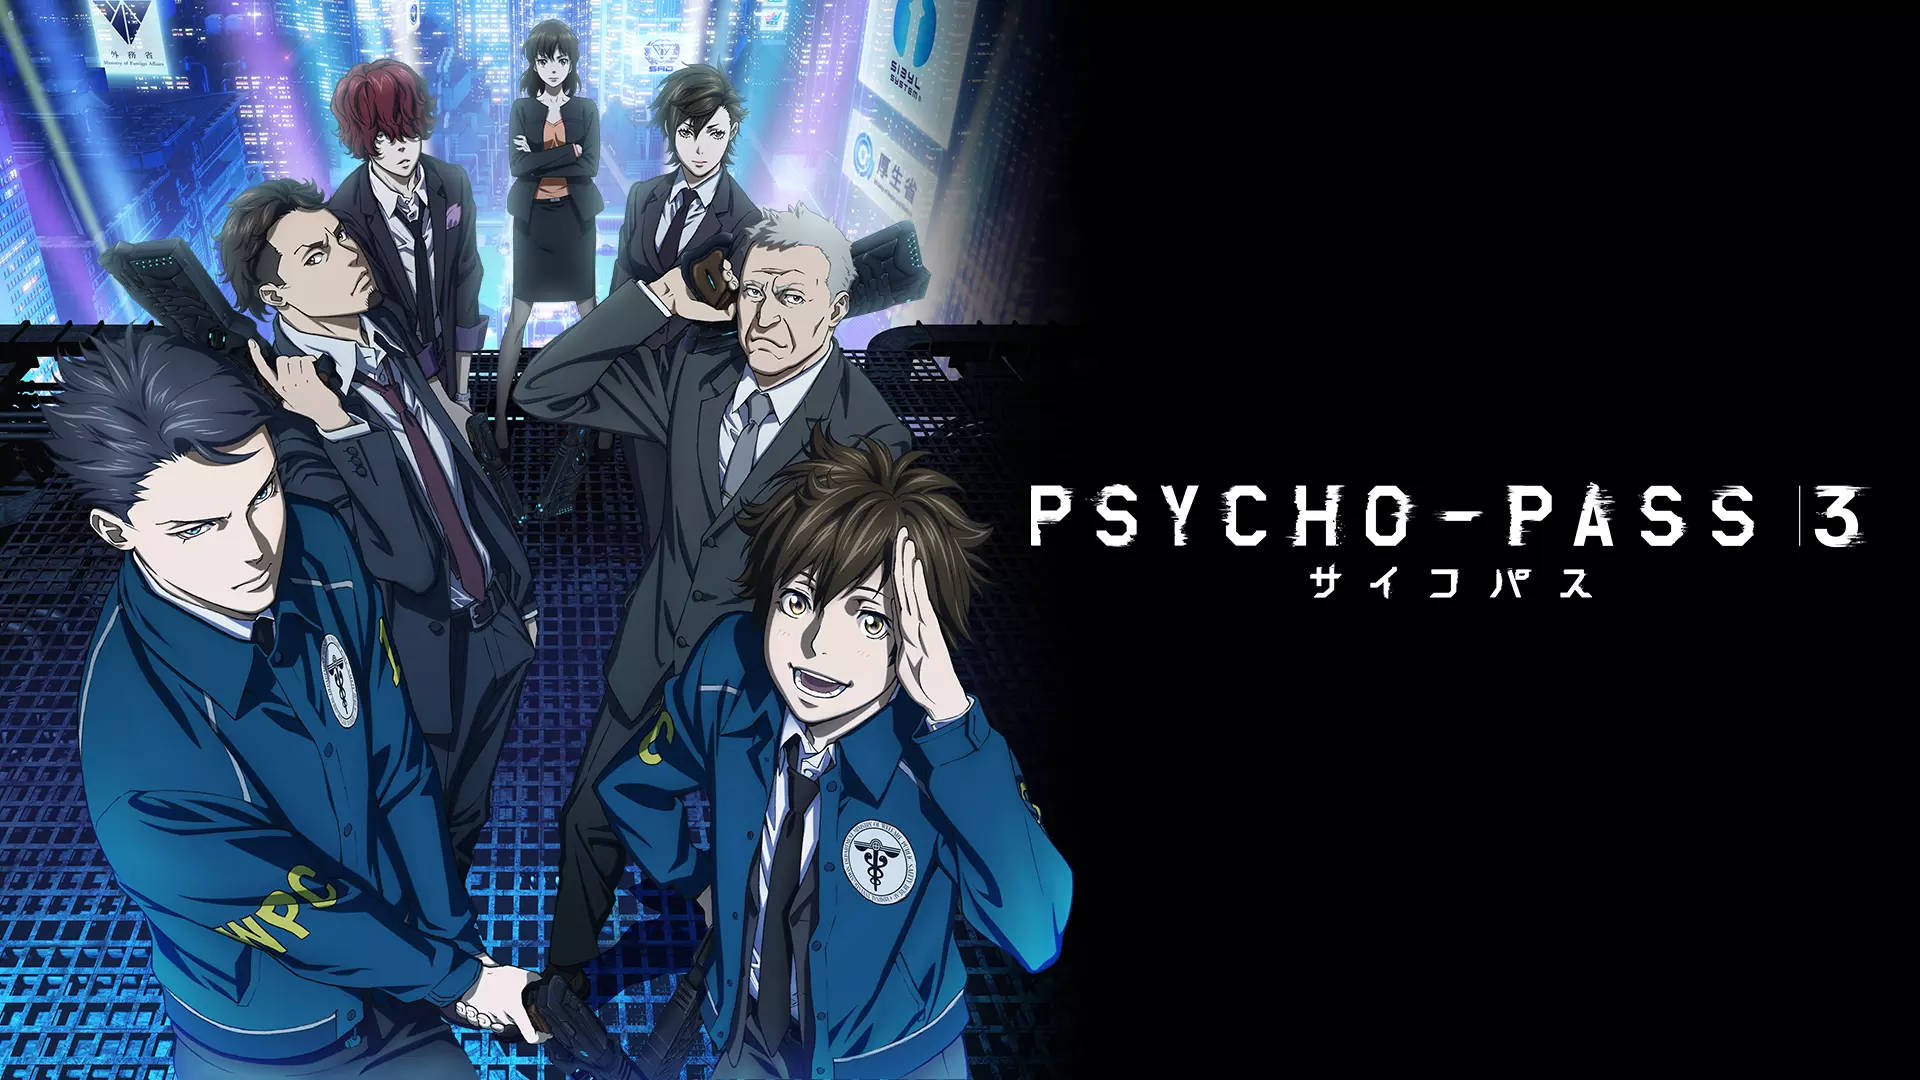 アニメ Psycho Pass サイコパス 3 3期 の動画を全話無料で見れる動画配信サイト